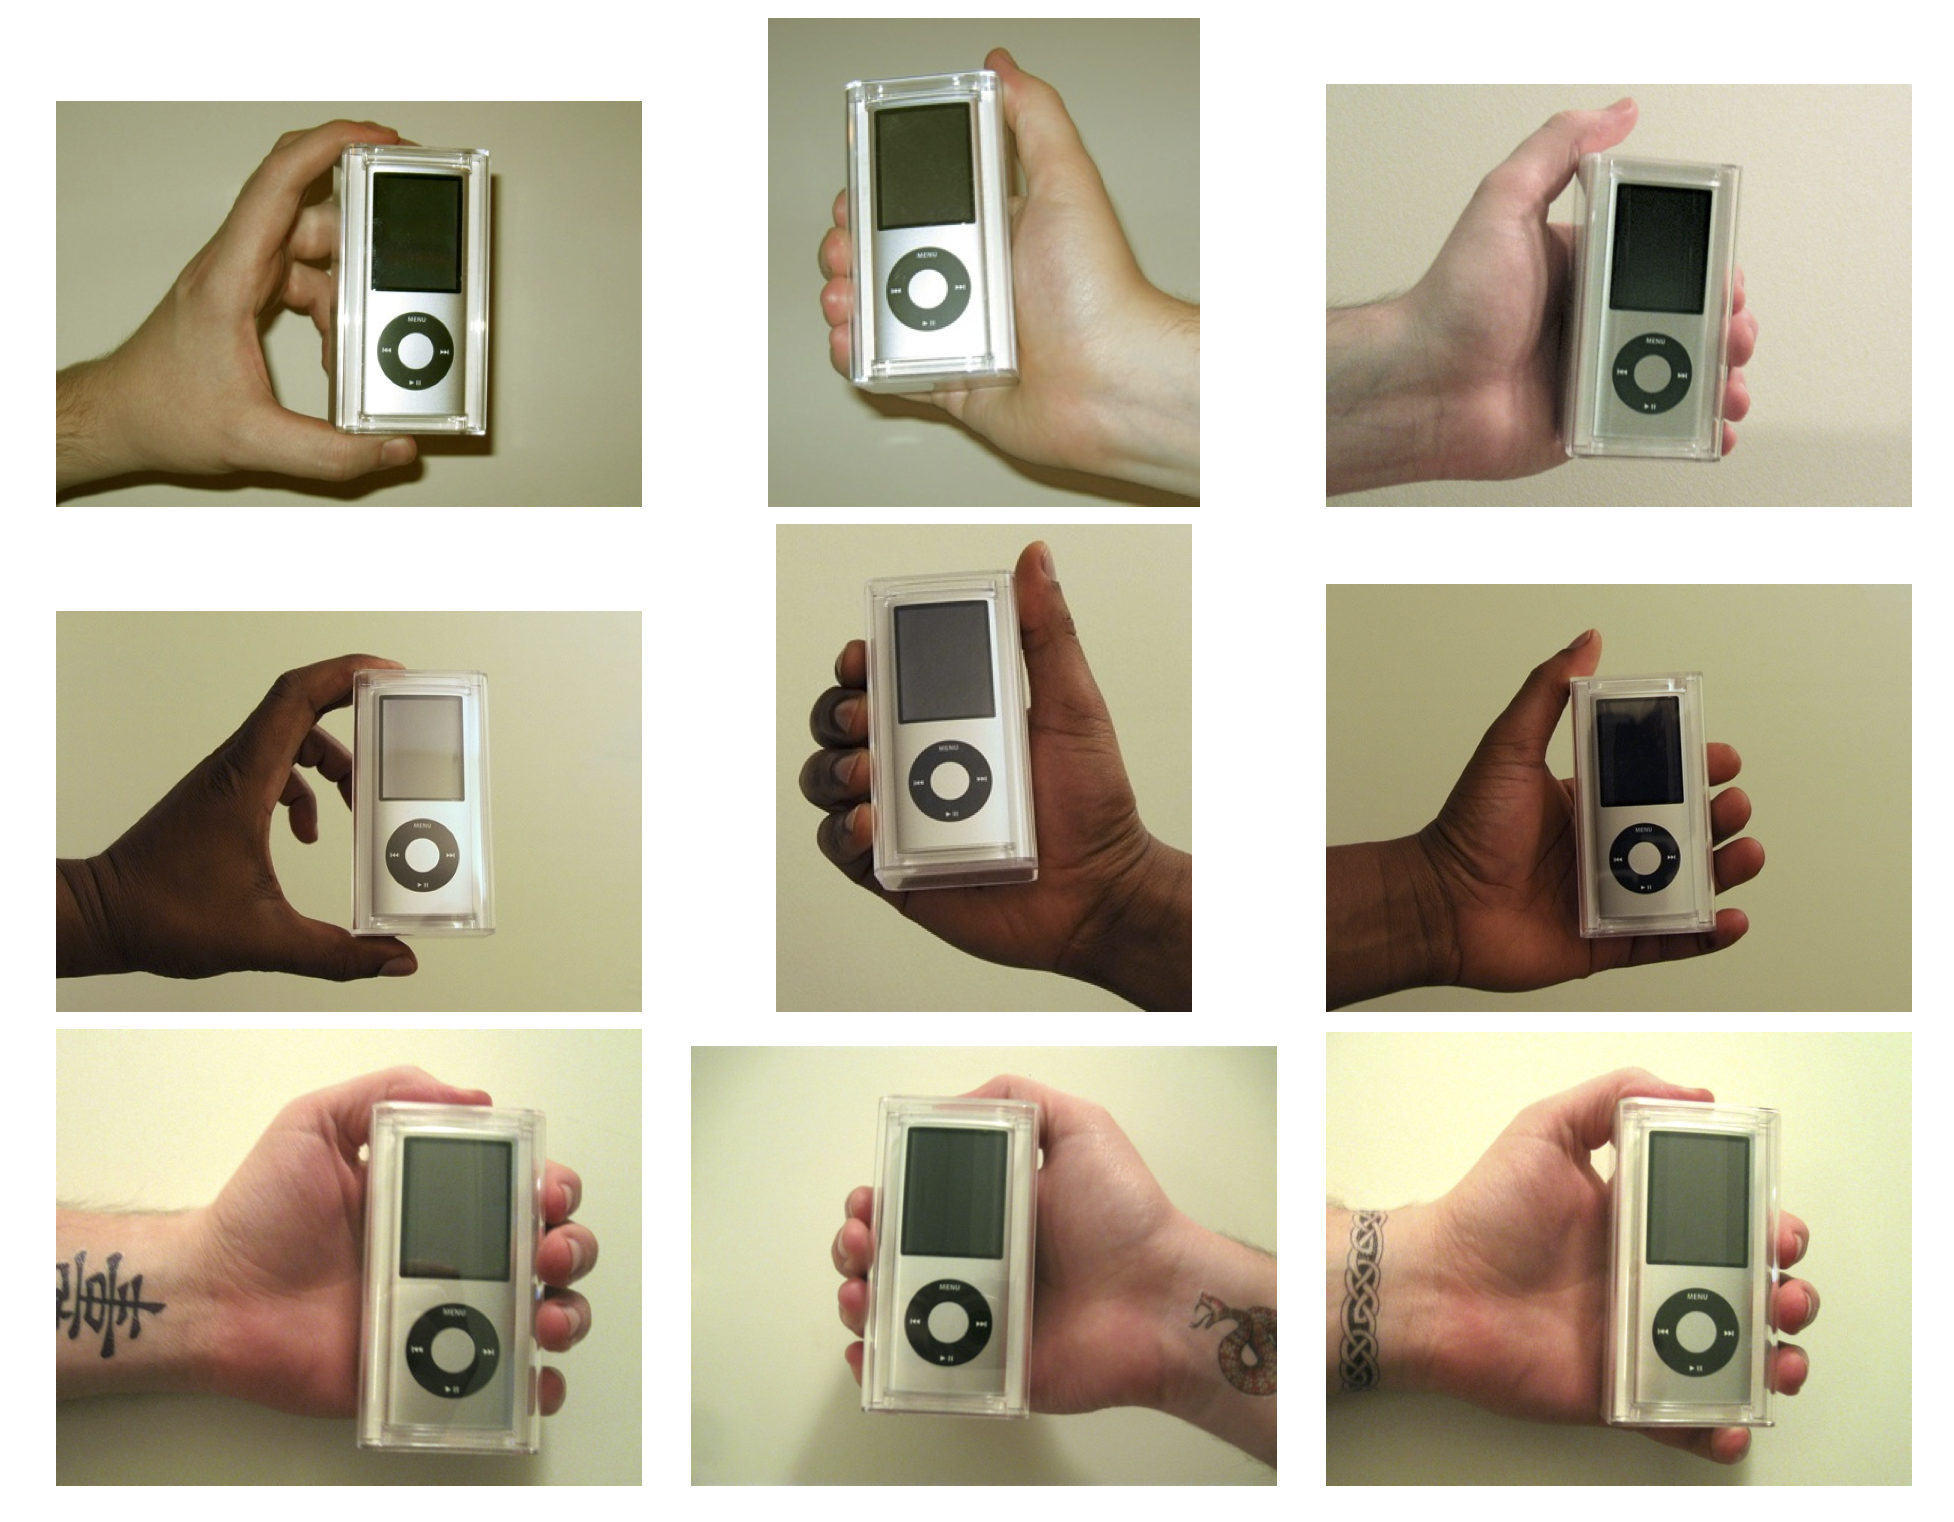 Figura 4.12: Mans utilitzats en l'experiment de Doleac i Stein (2013). iPods van ser venuts pels venedors amb característiques diferents per mesurar la discriminació en un mercat electrònic.